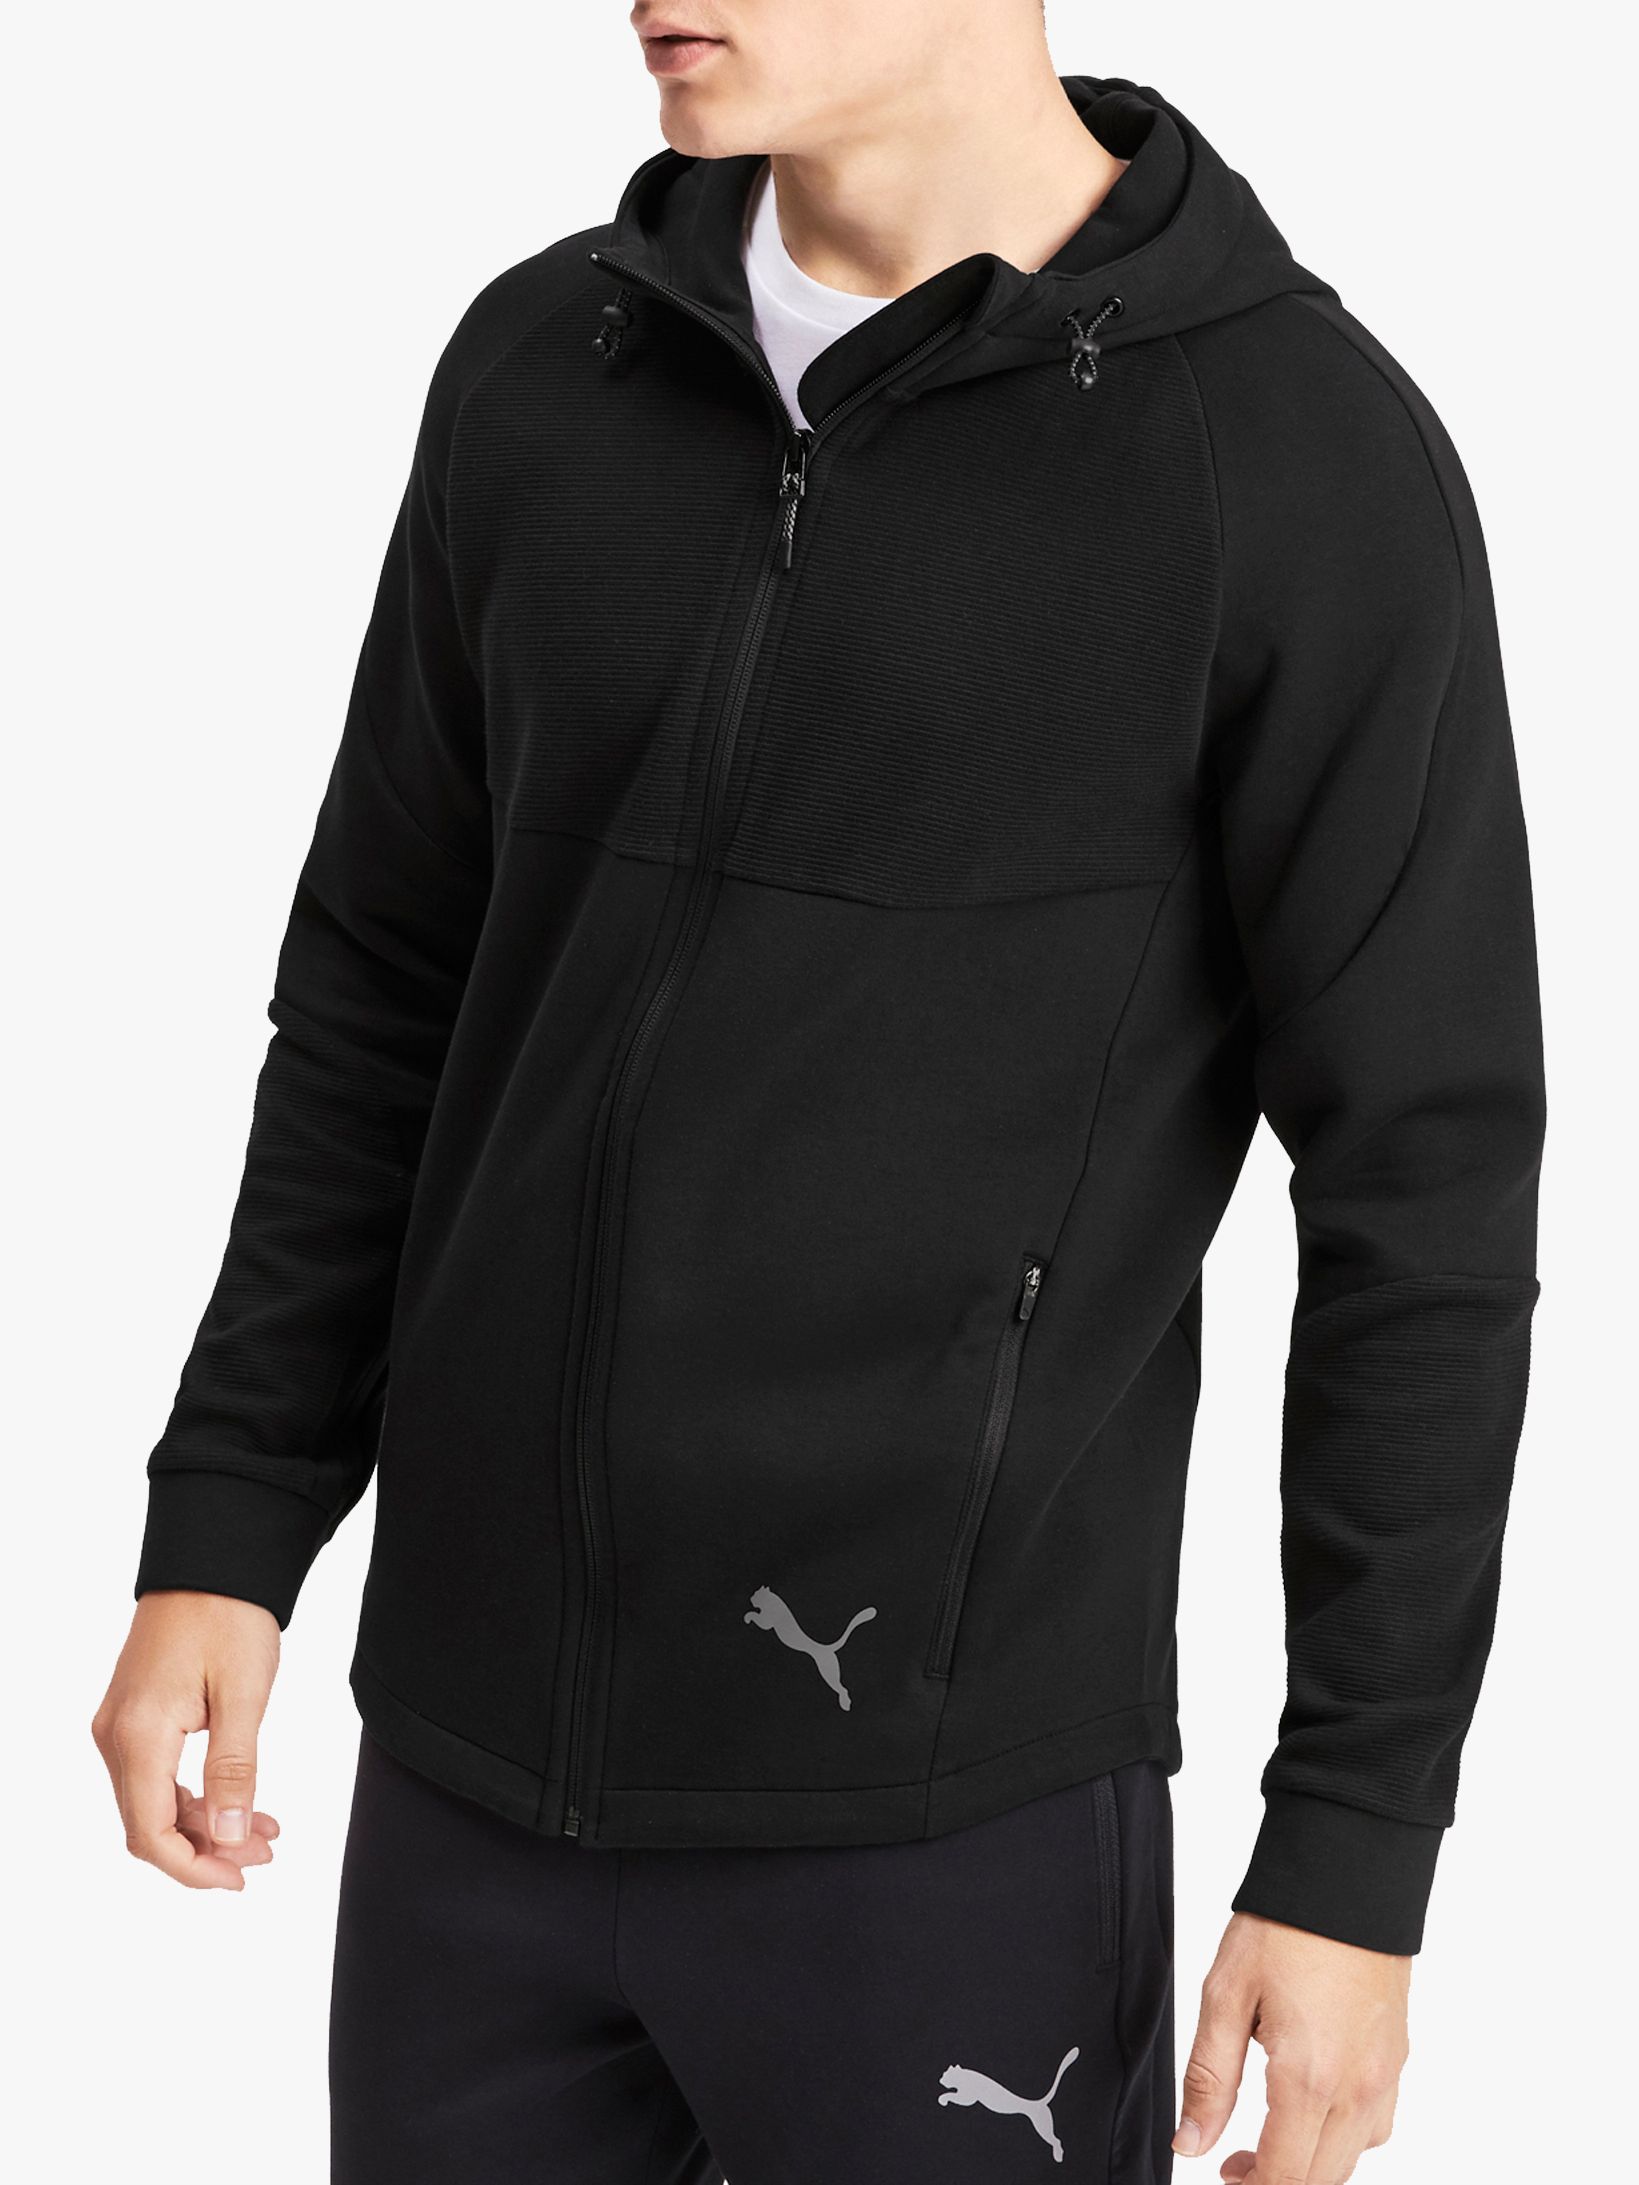 puma evostripe hoodie black